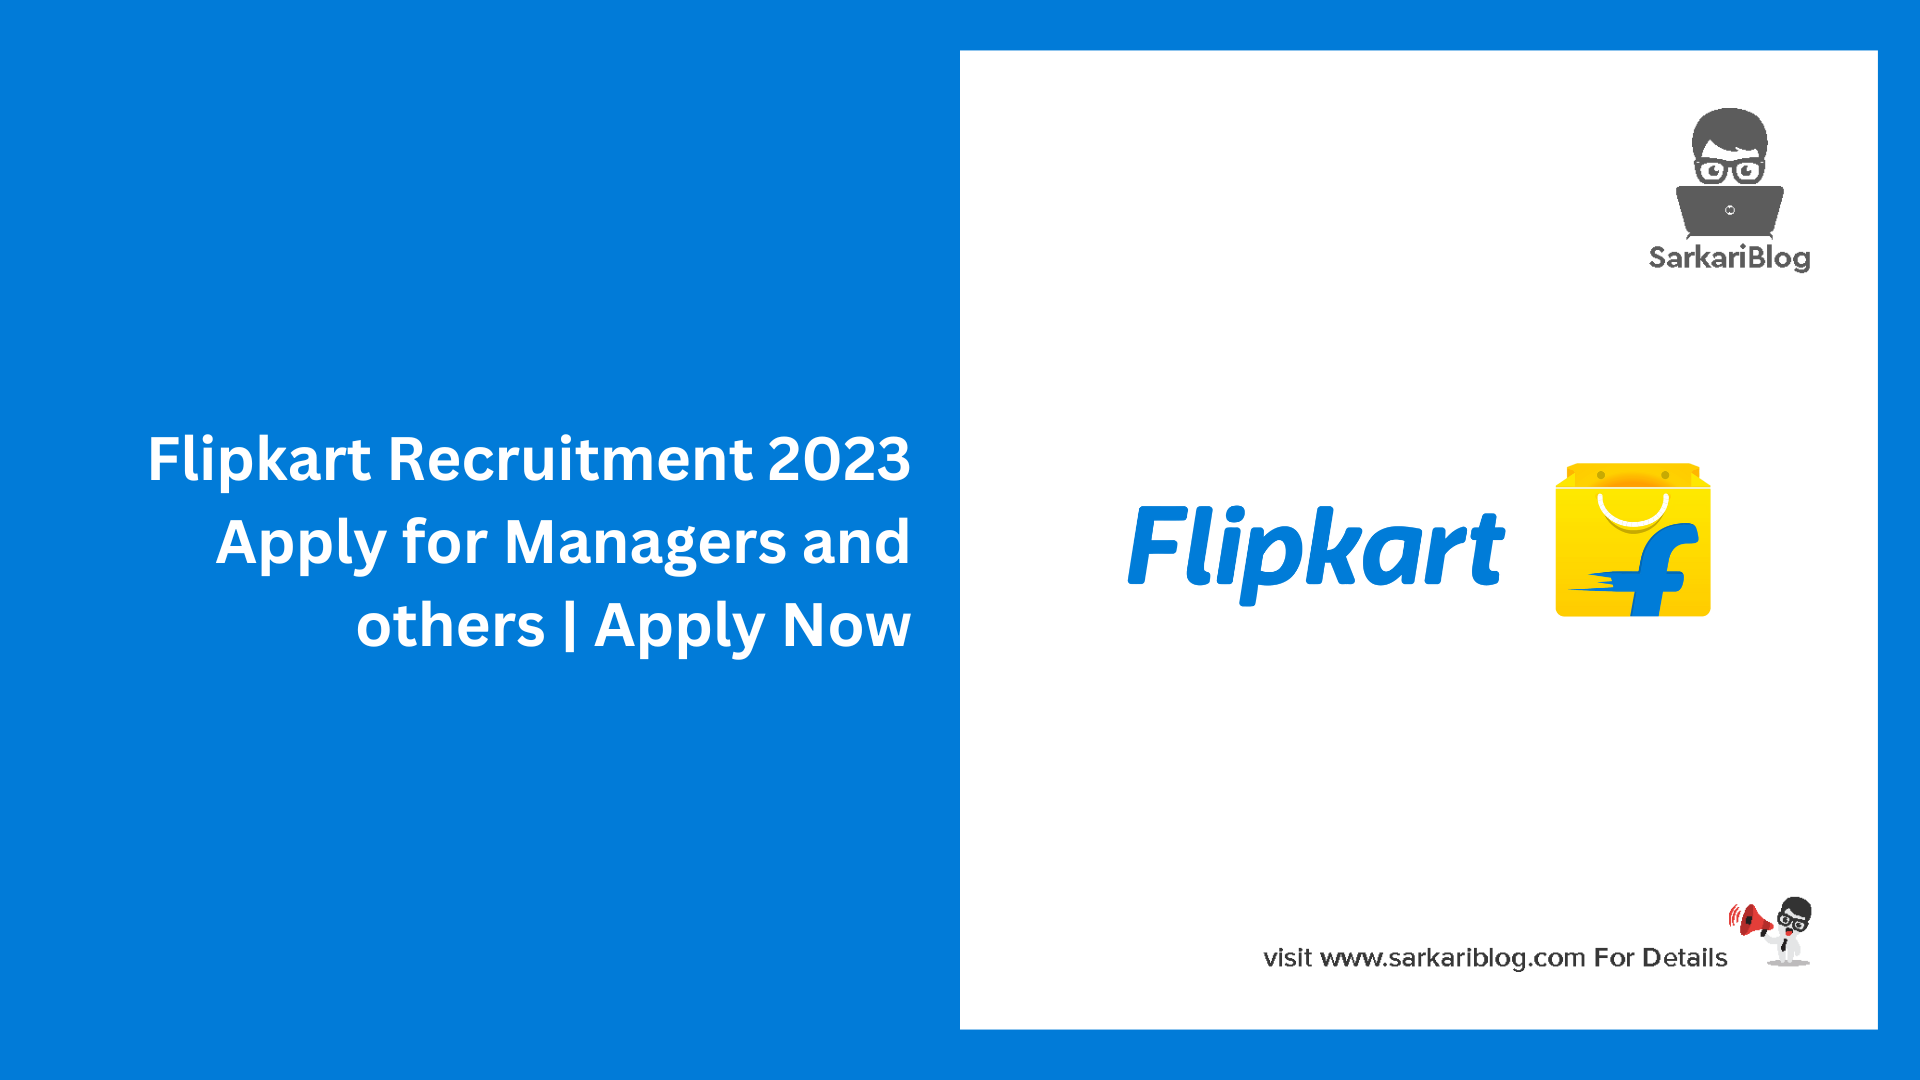 Flipkart Recruitment 2023